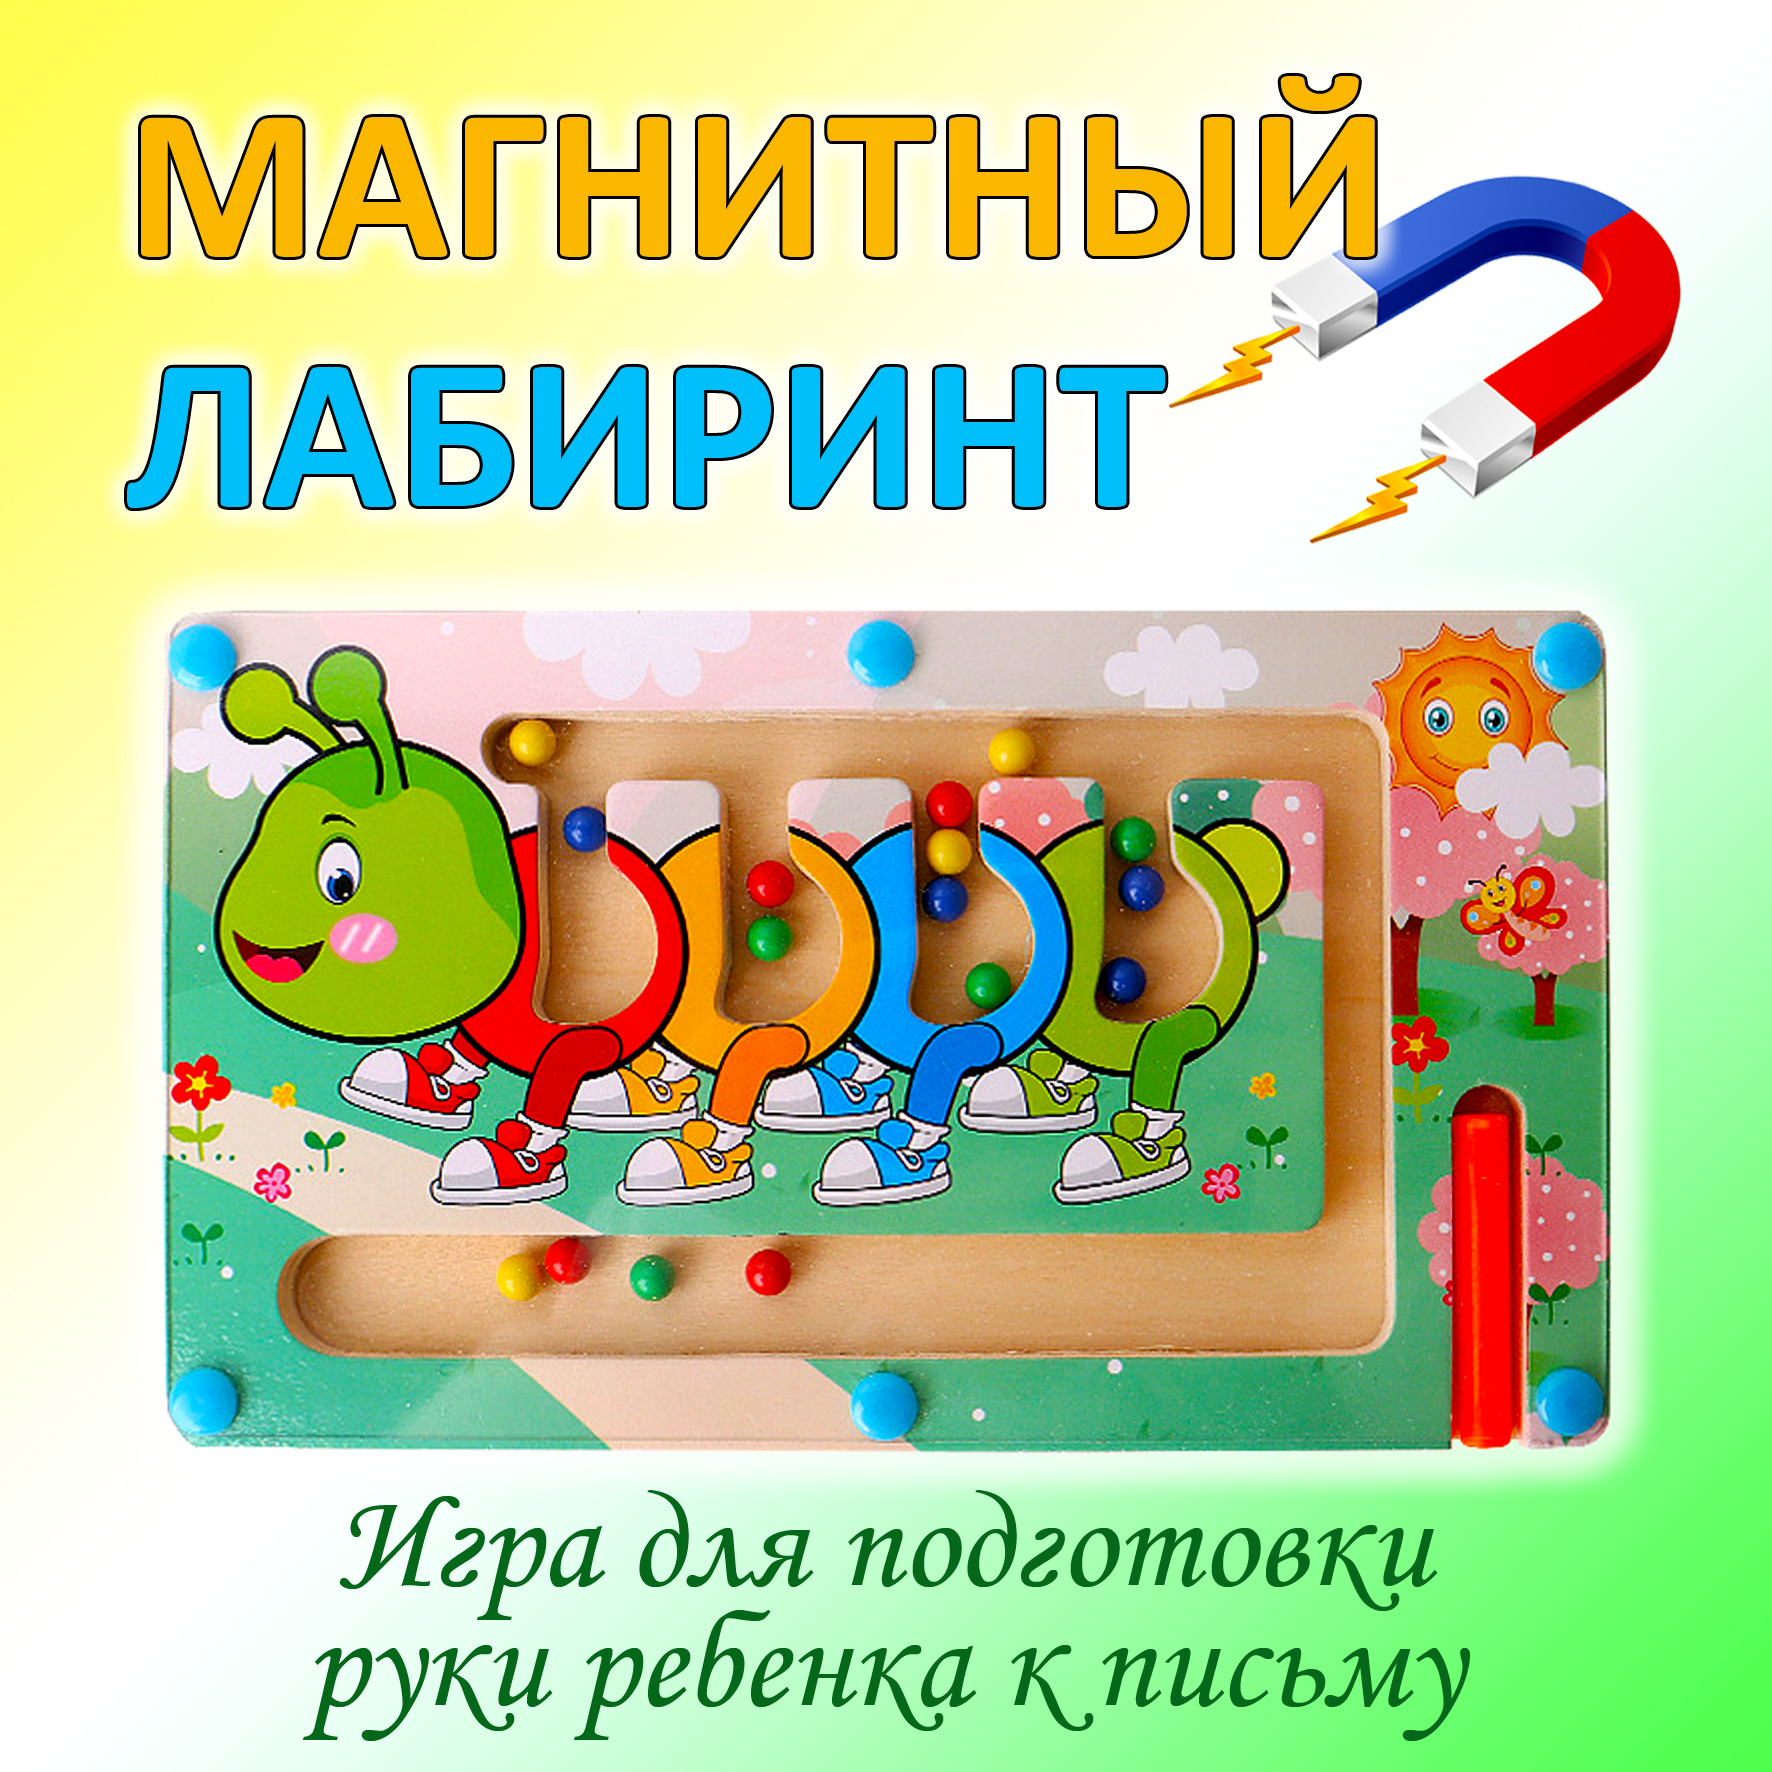 Магнитный лабиринт Igrushka48 игрушка для подготовка детской руки к письму 22х125х15см магнитный лабиринт цифры в коробке 2 палочки с магнитами разно ные шарики viga 50180